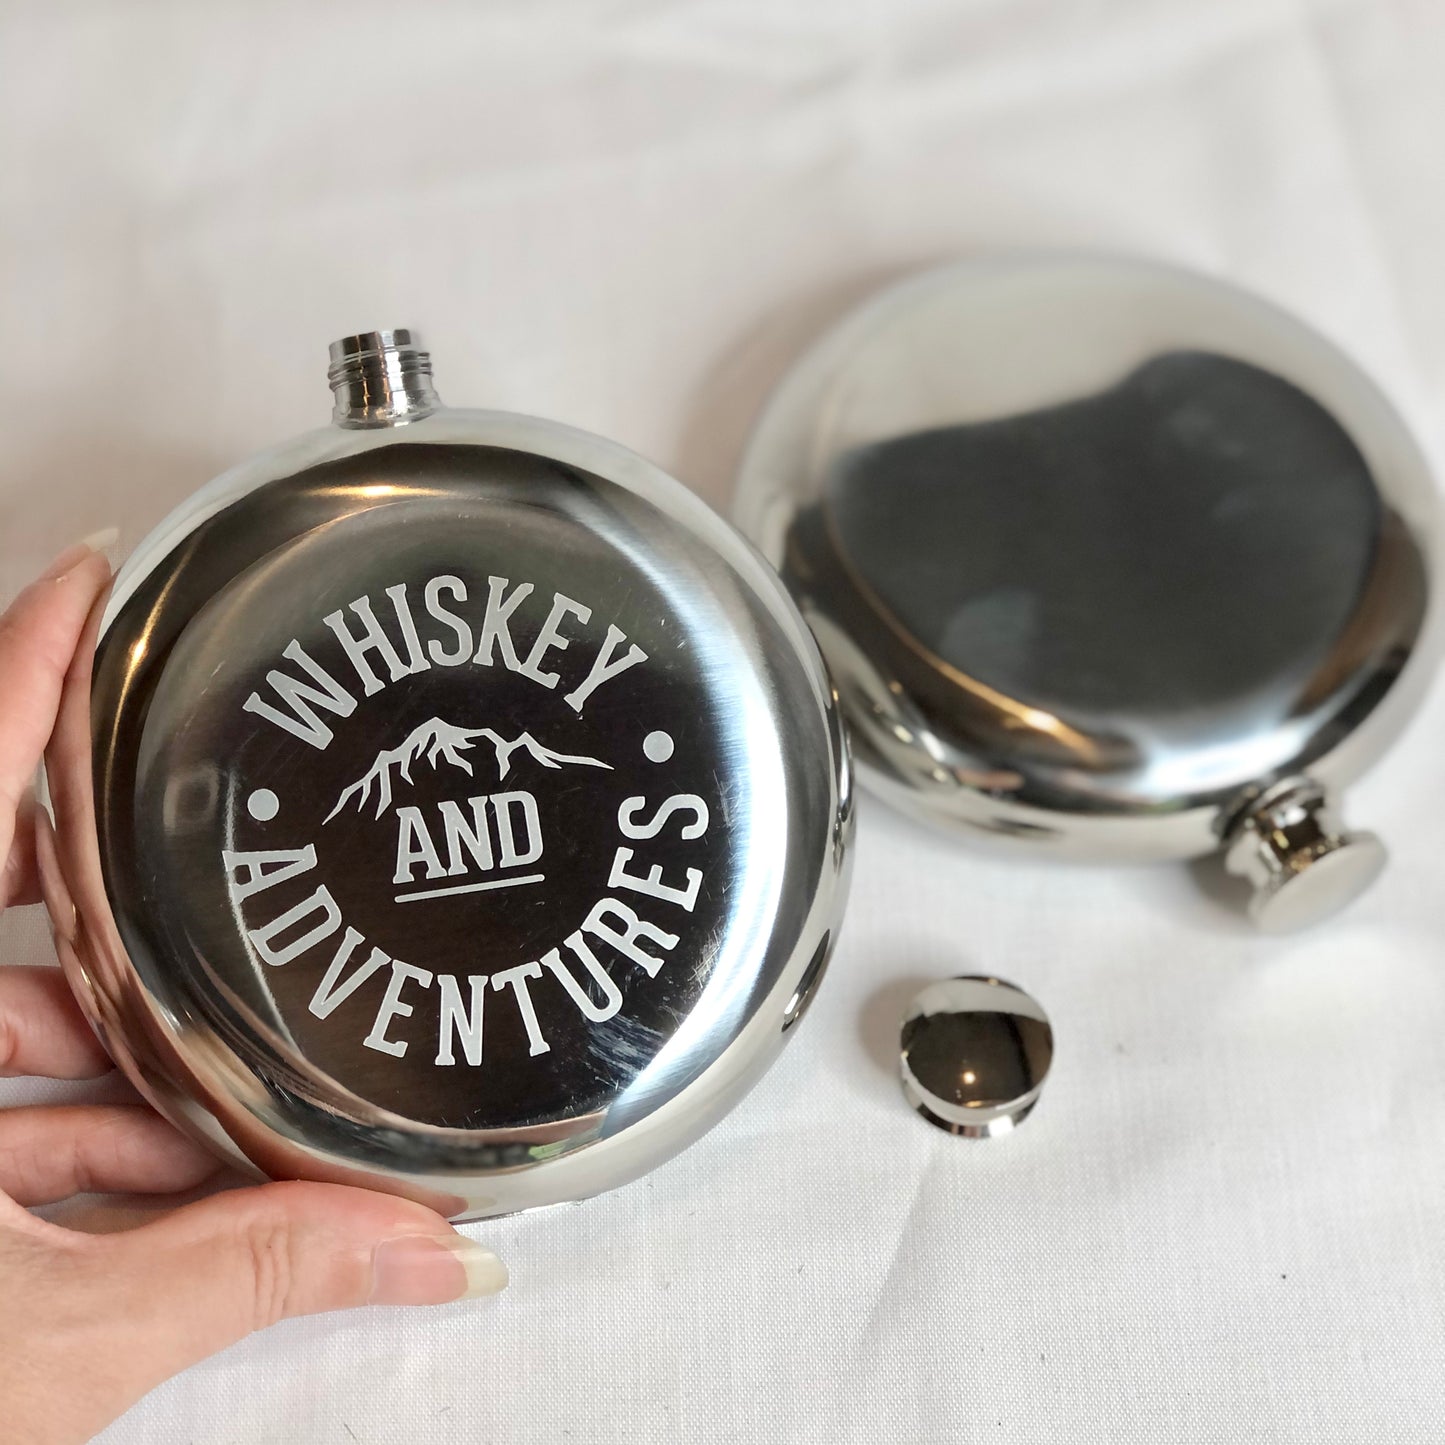 Whiskey metal hip flask